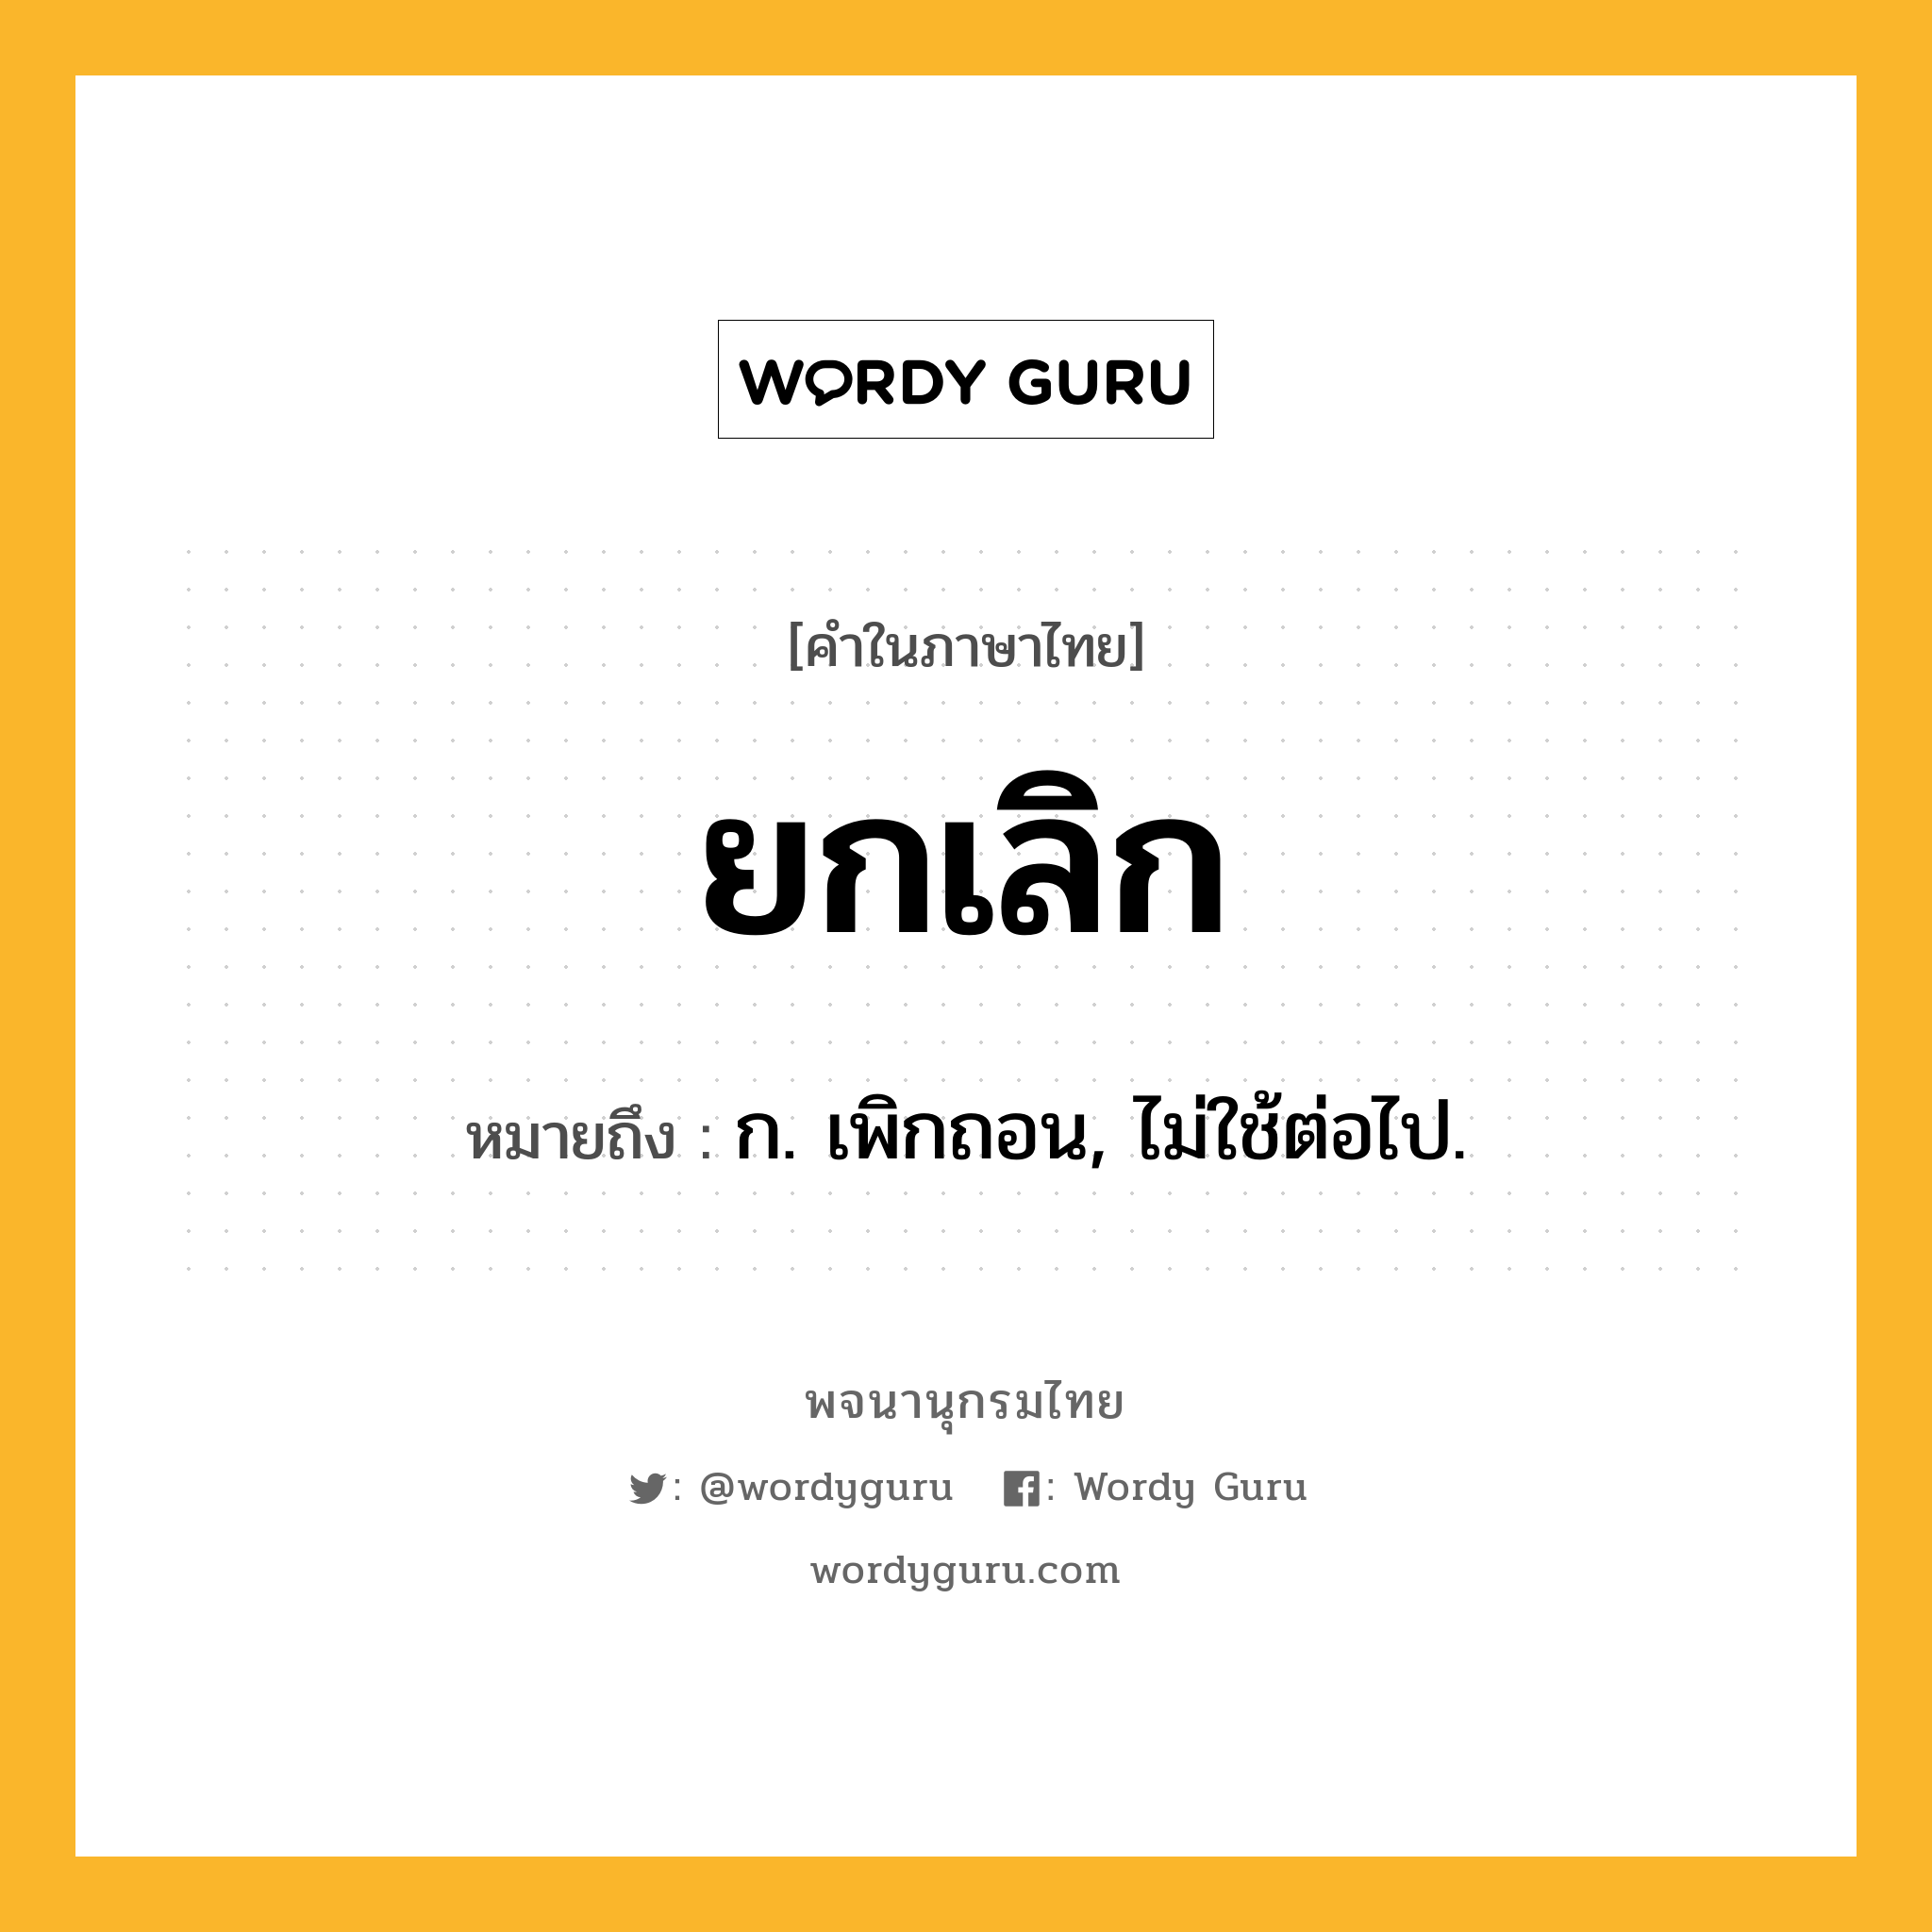 ยกเลิก หมายถึงอะไร?, คำในภาษาไทย ยกเลิก หมายถึง ก. เพิกถอน, ไม่ใช้ต่อไป.